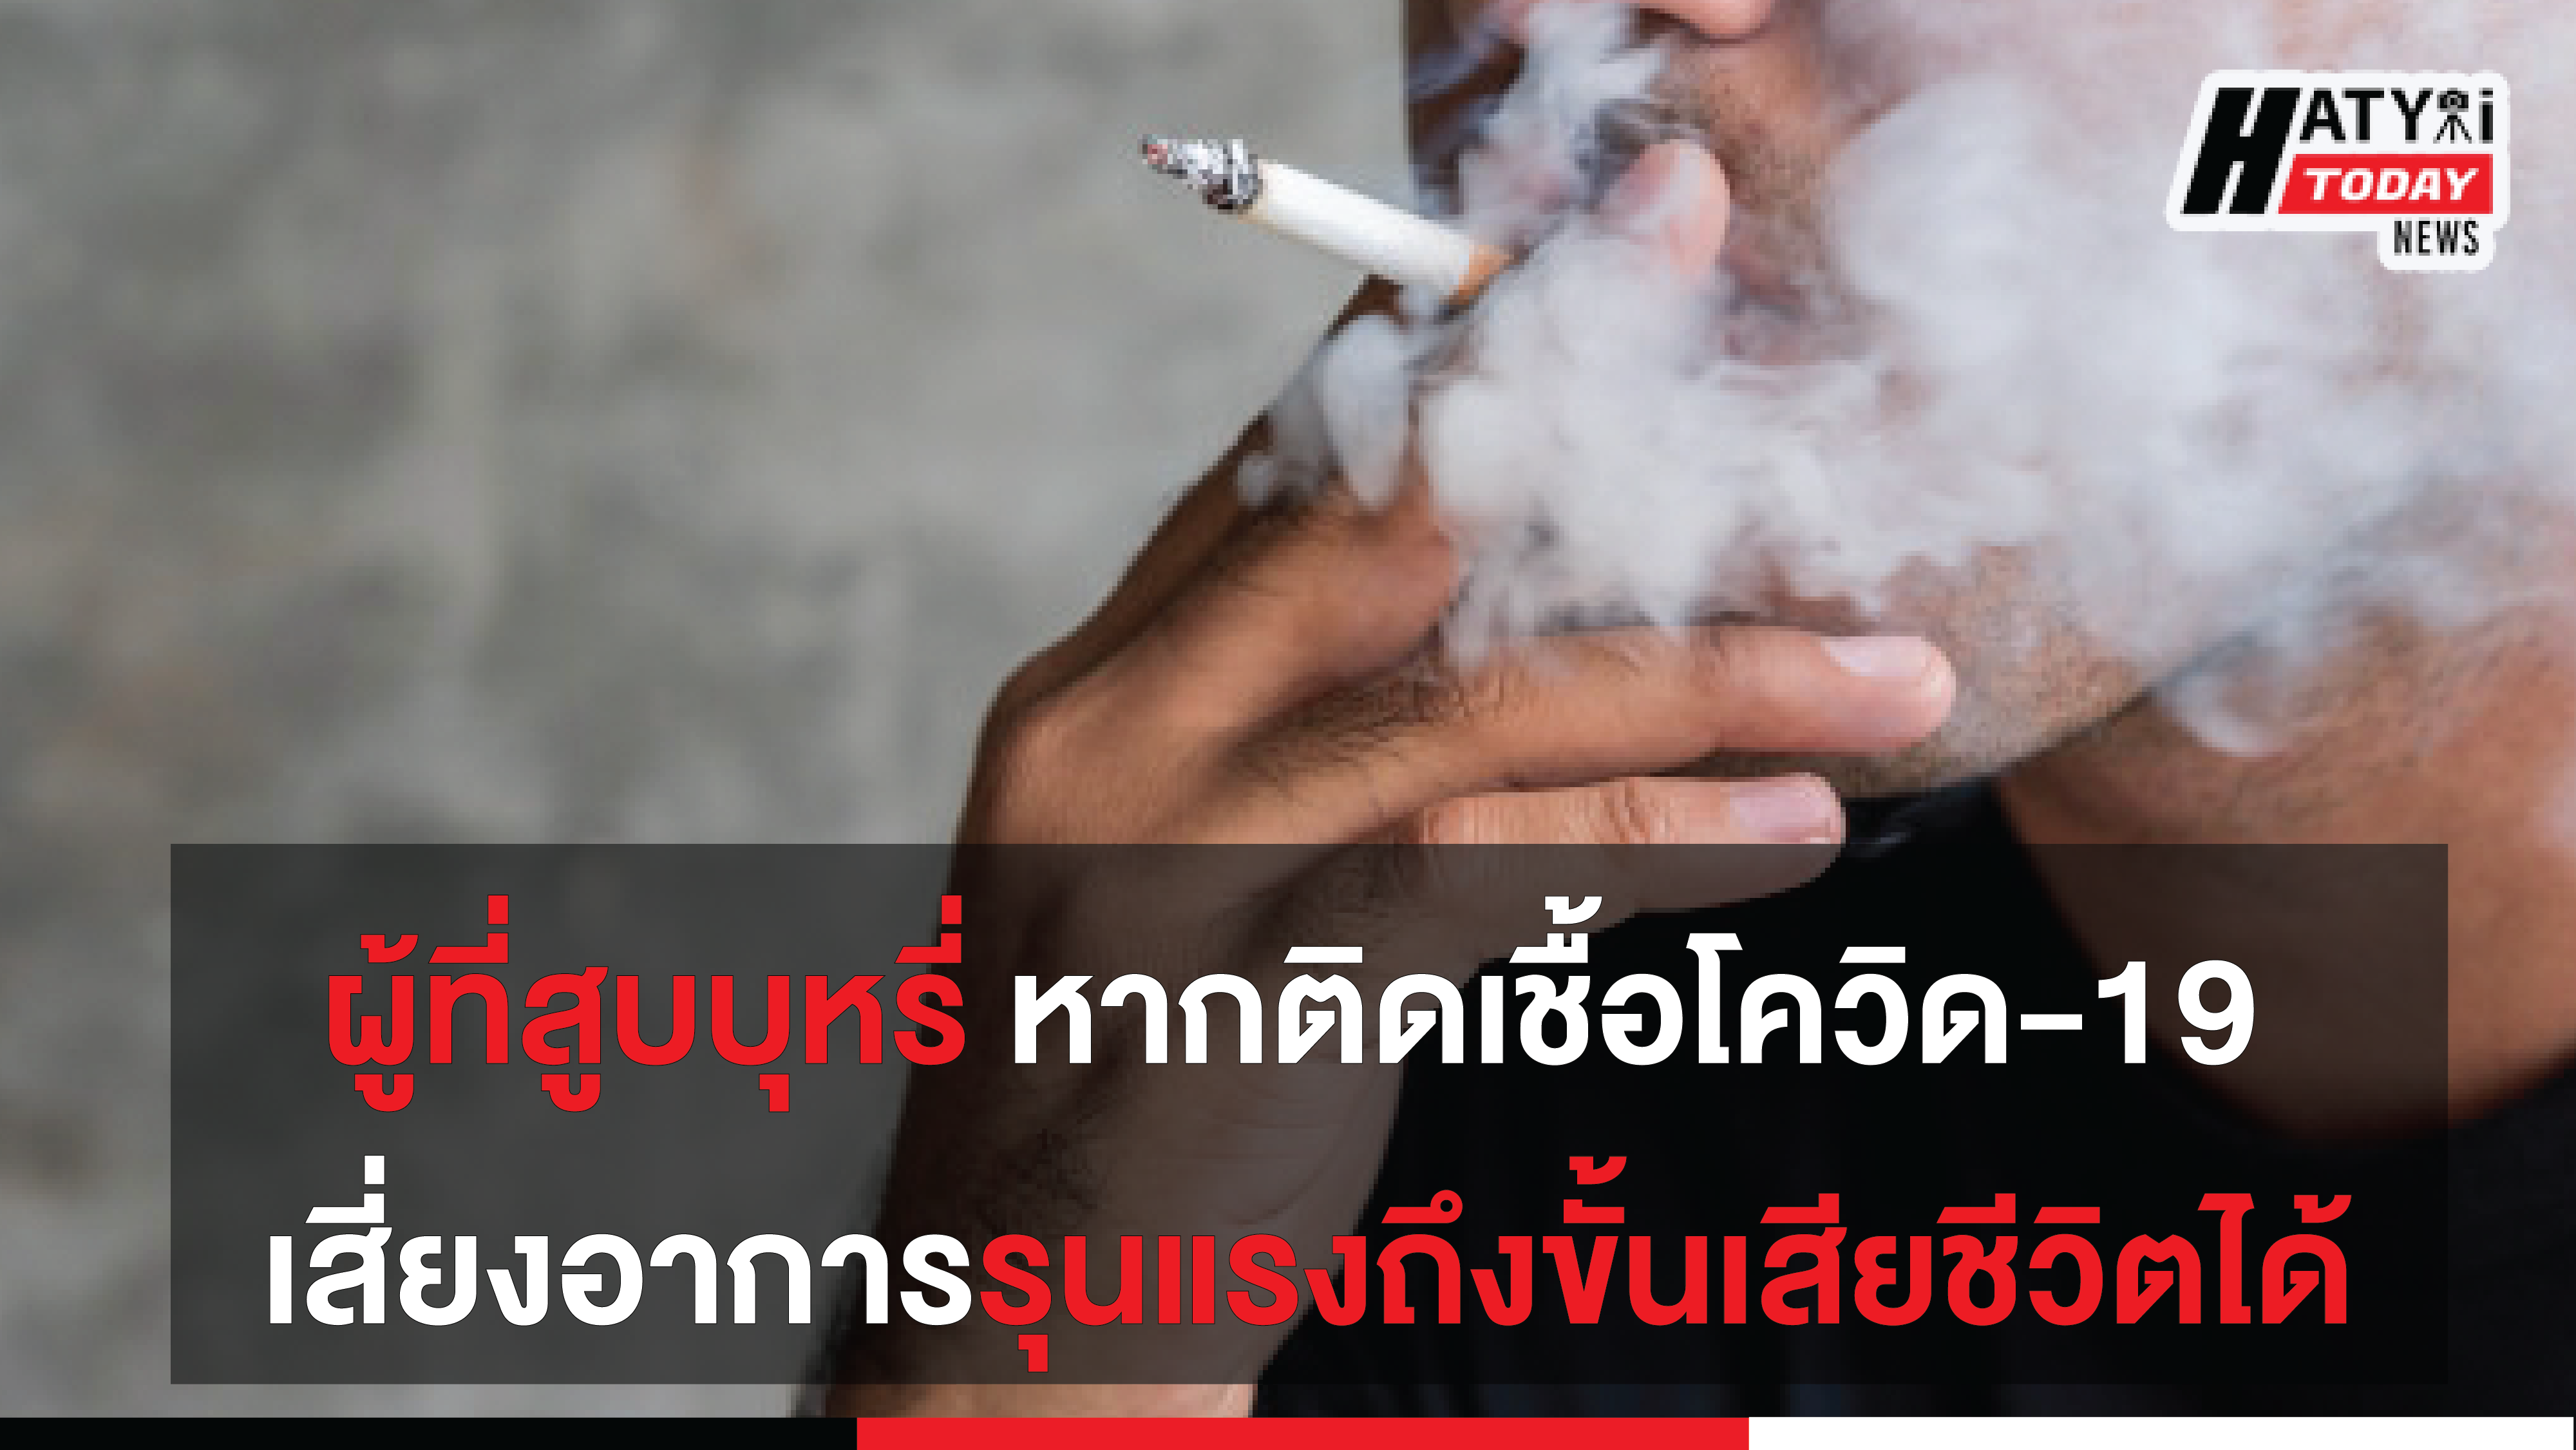 ผู้ที่สูบบุหรี่ หากติดเชื้อโควิด-19 เสี่ยงอาการรุนแรงอาจถึงขั้นเสียชีวิตได้